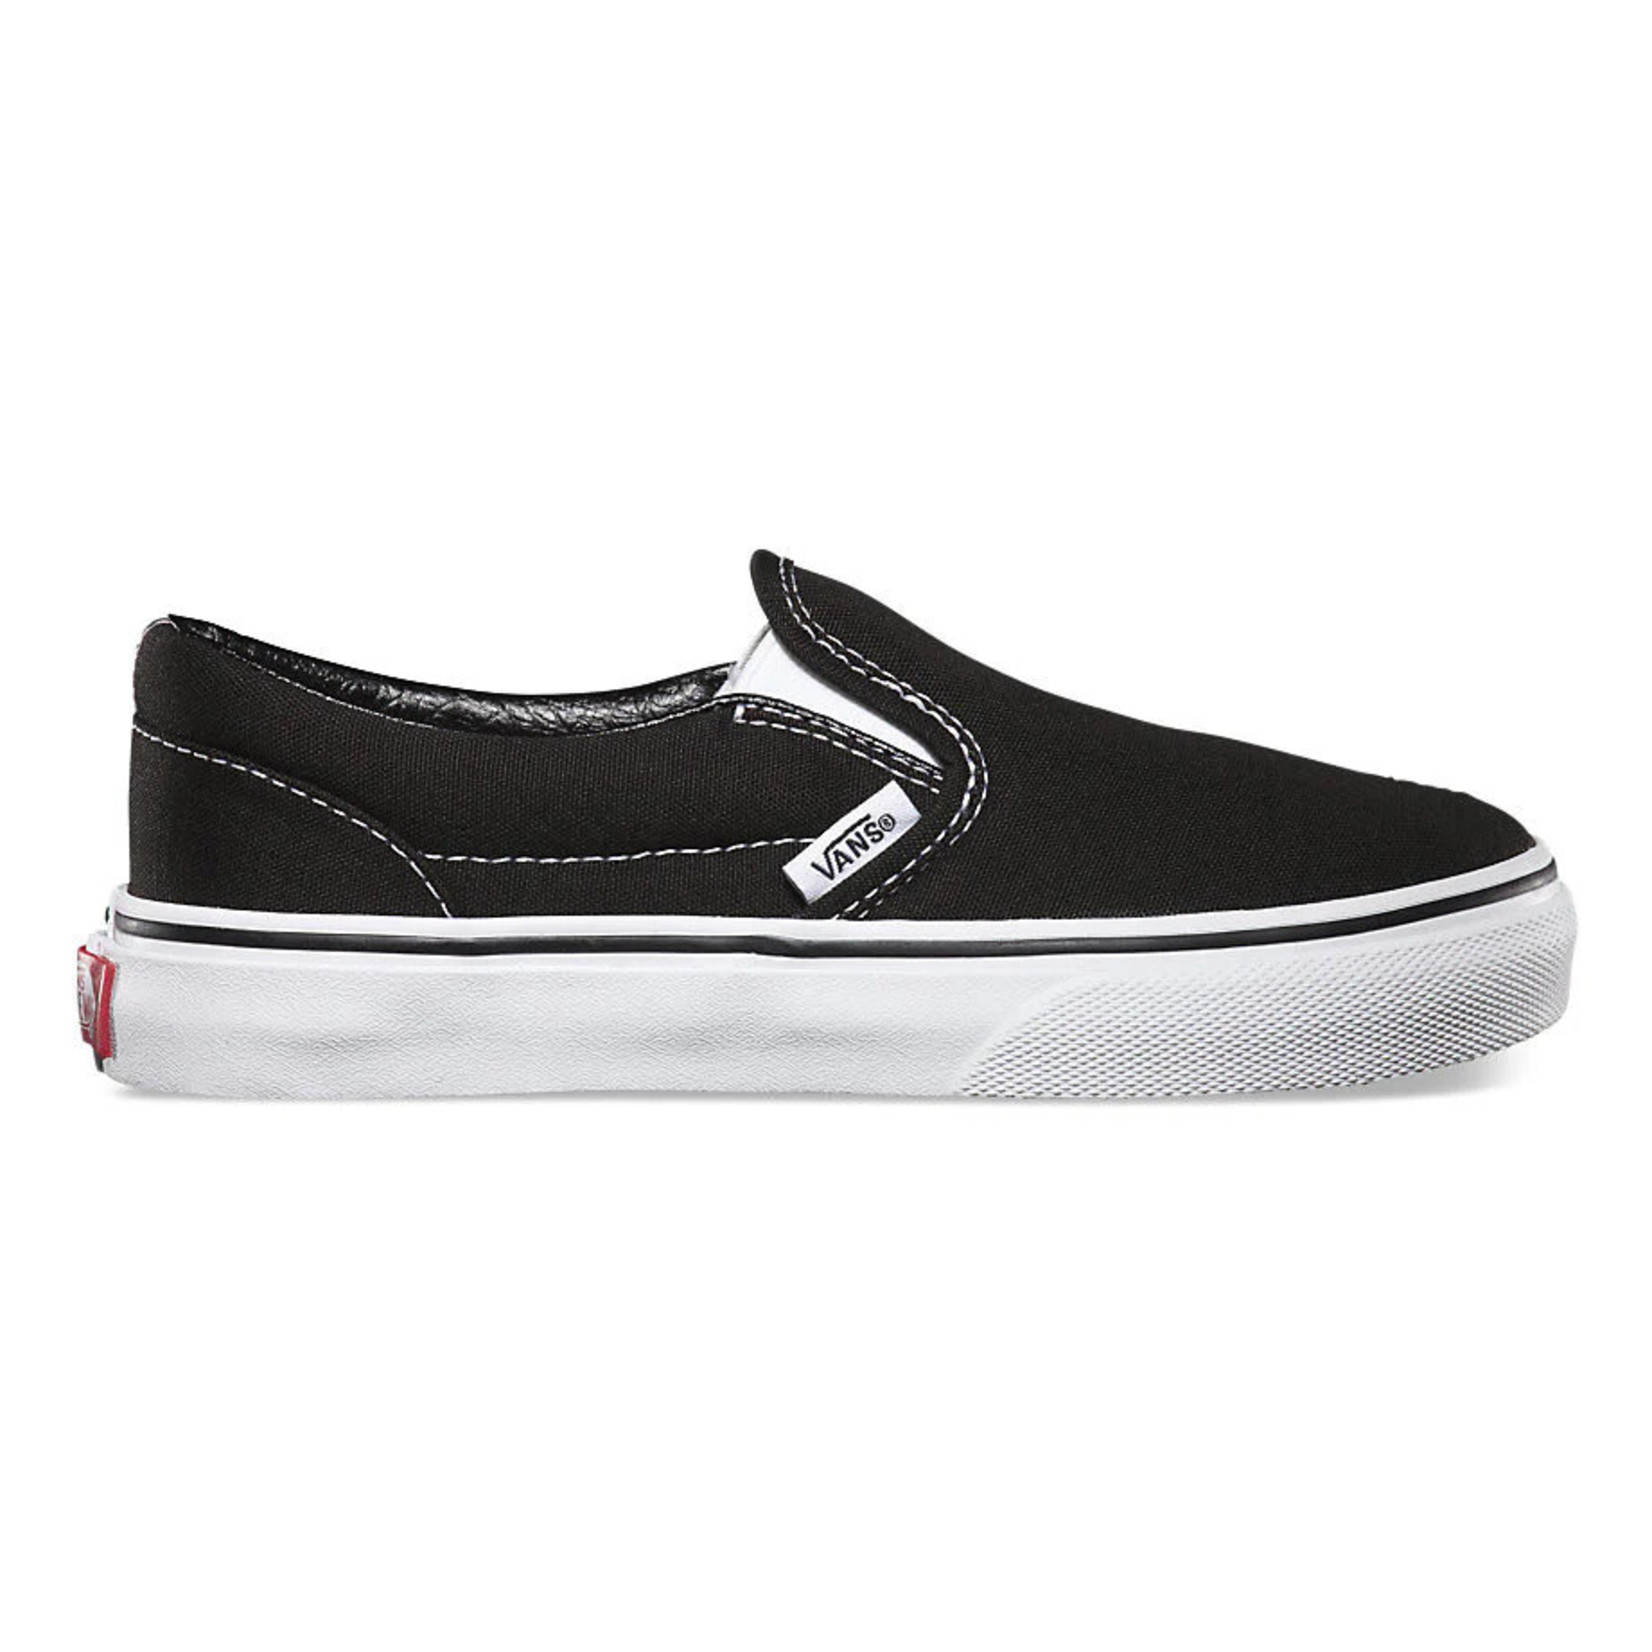 Vans Vans Classic Slip-On Youth Skate Shoes - Black/True White -